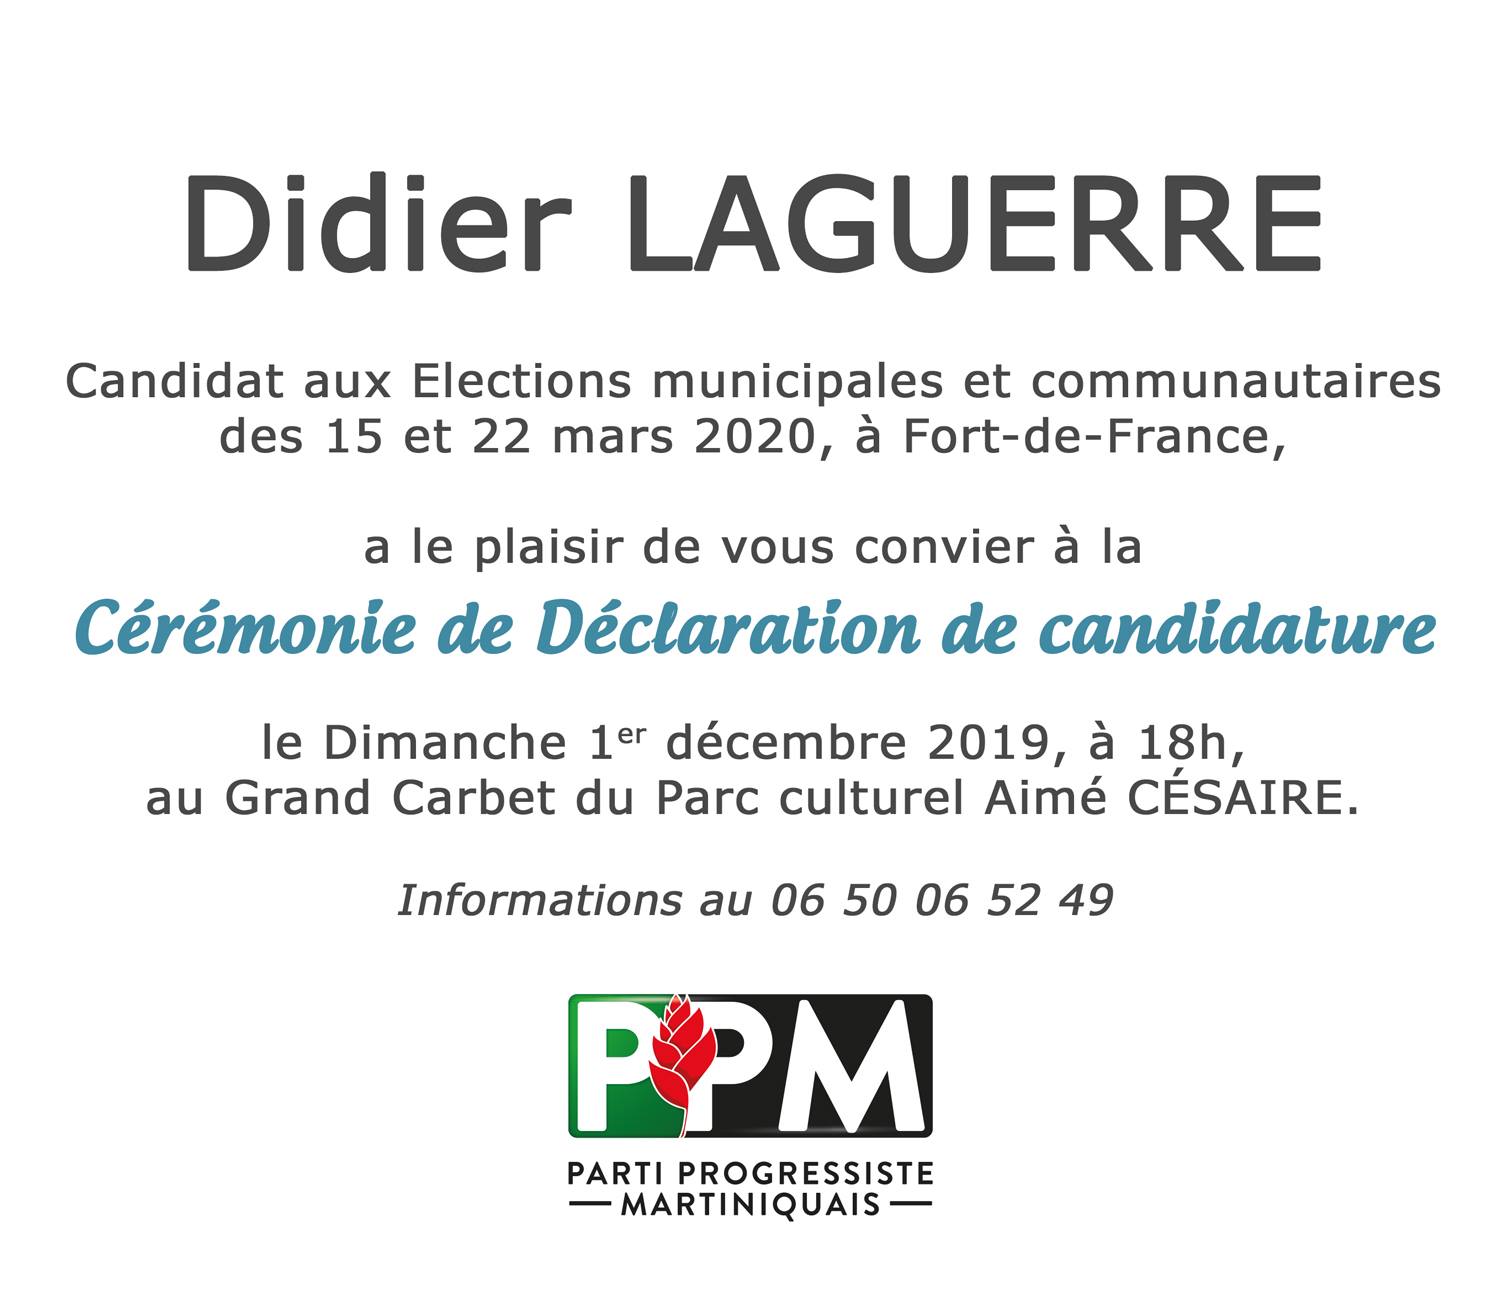 Déclaration de candidature de Didier Laguerre ce Dimanche 1 décembre